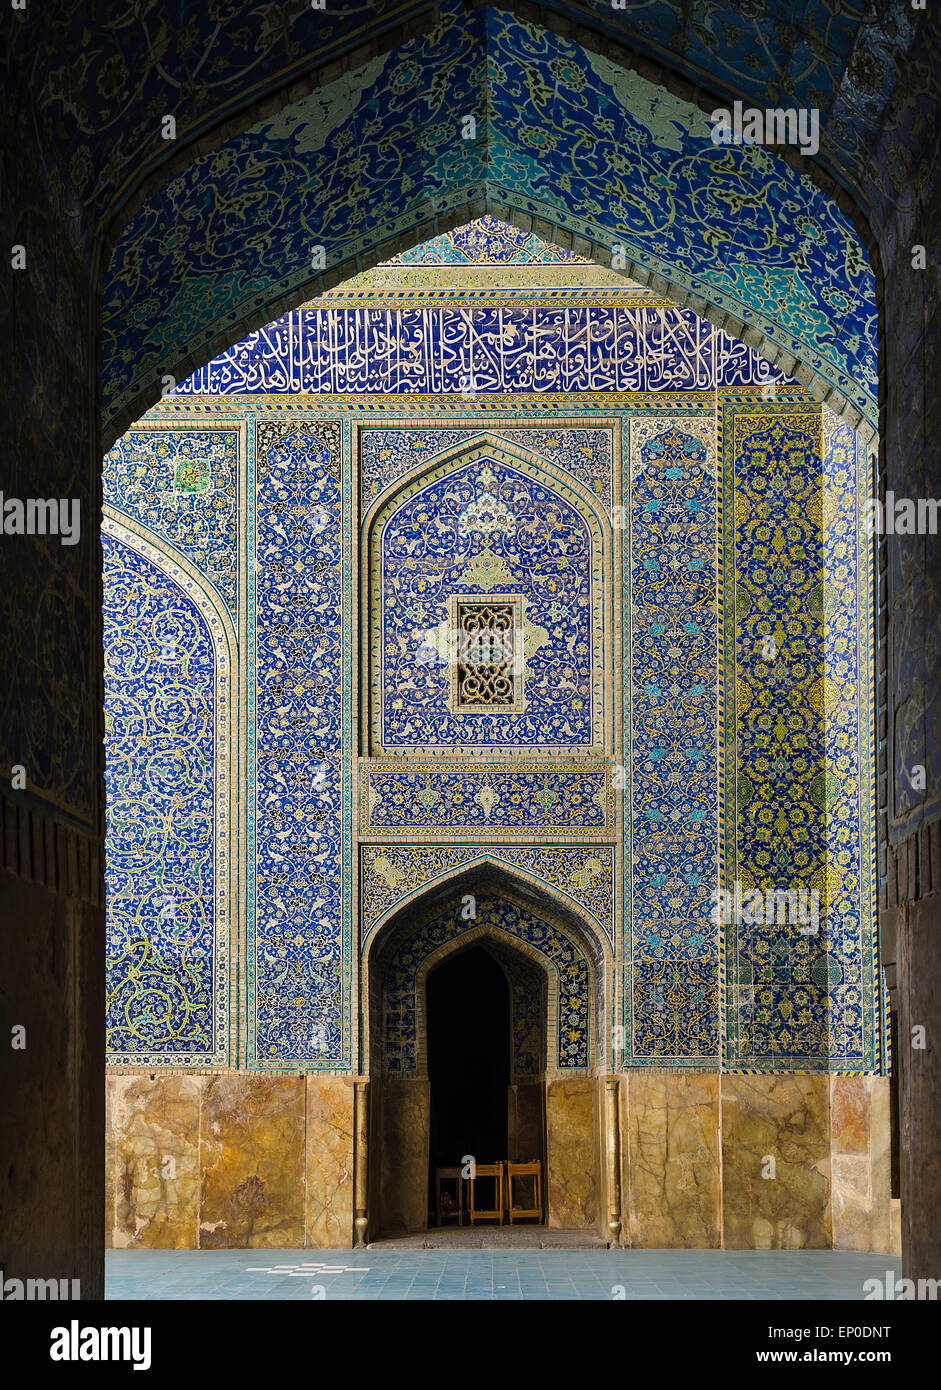 Imam Mosque, Imam Square, Esfahan, Iran Stock Photo